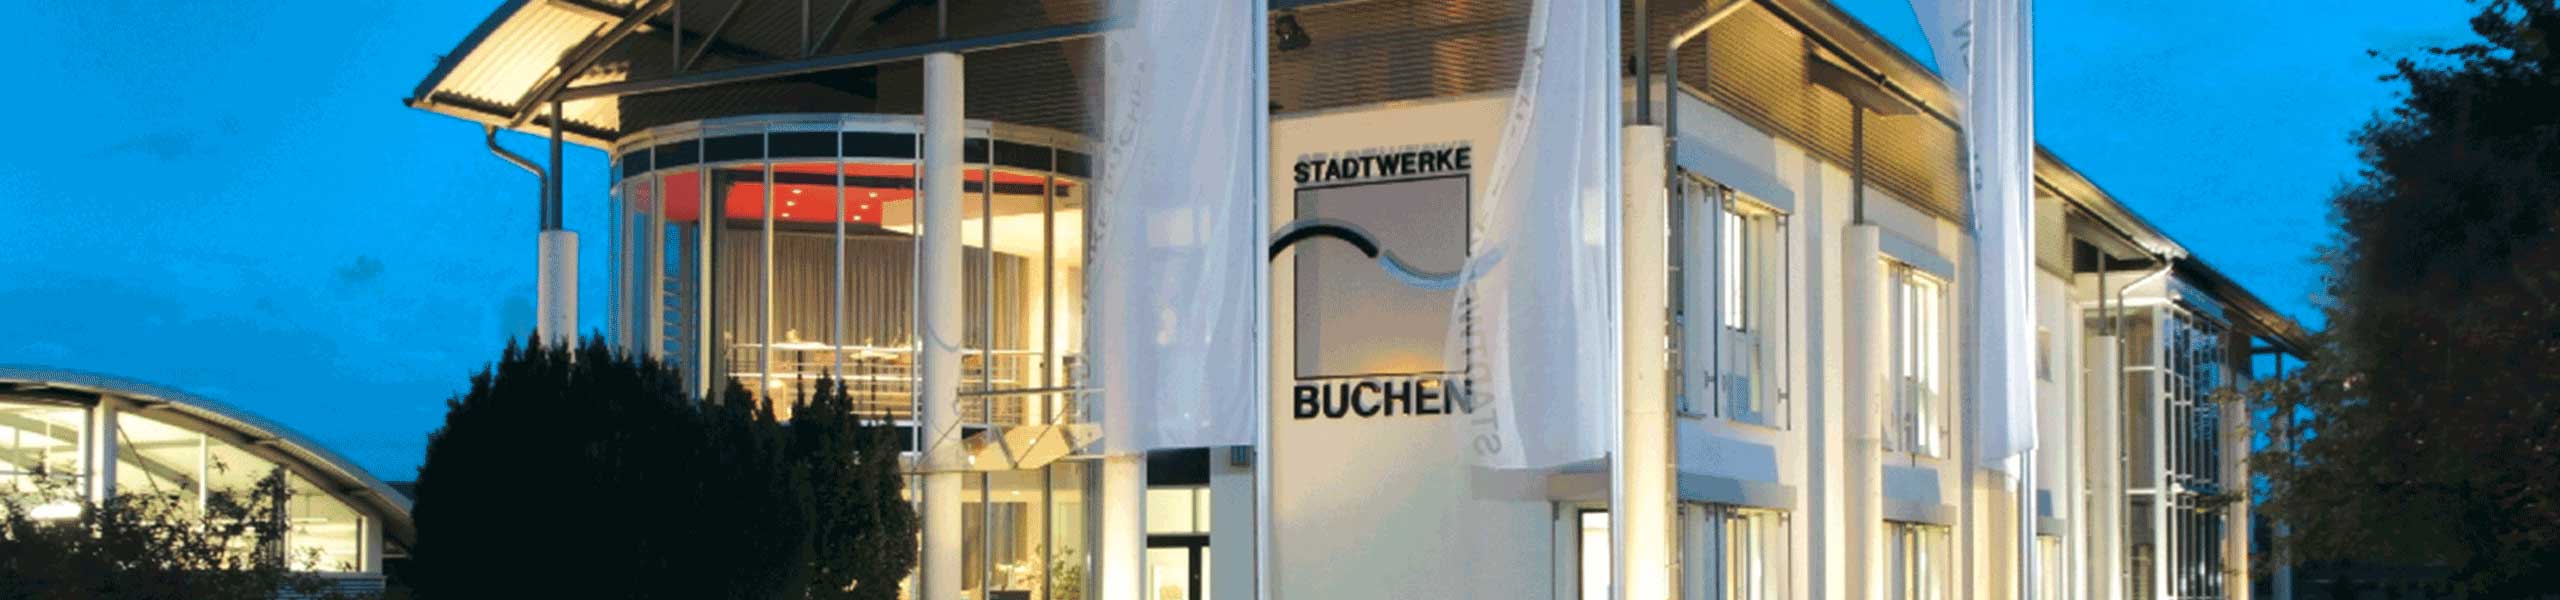 Stadtwerke Buchen GmbH & Co KG - Ihr Versorger vor Ort - Preisanpassung Stromtarife Grundversorgung und Futura zum 01.04.2022